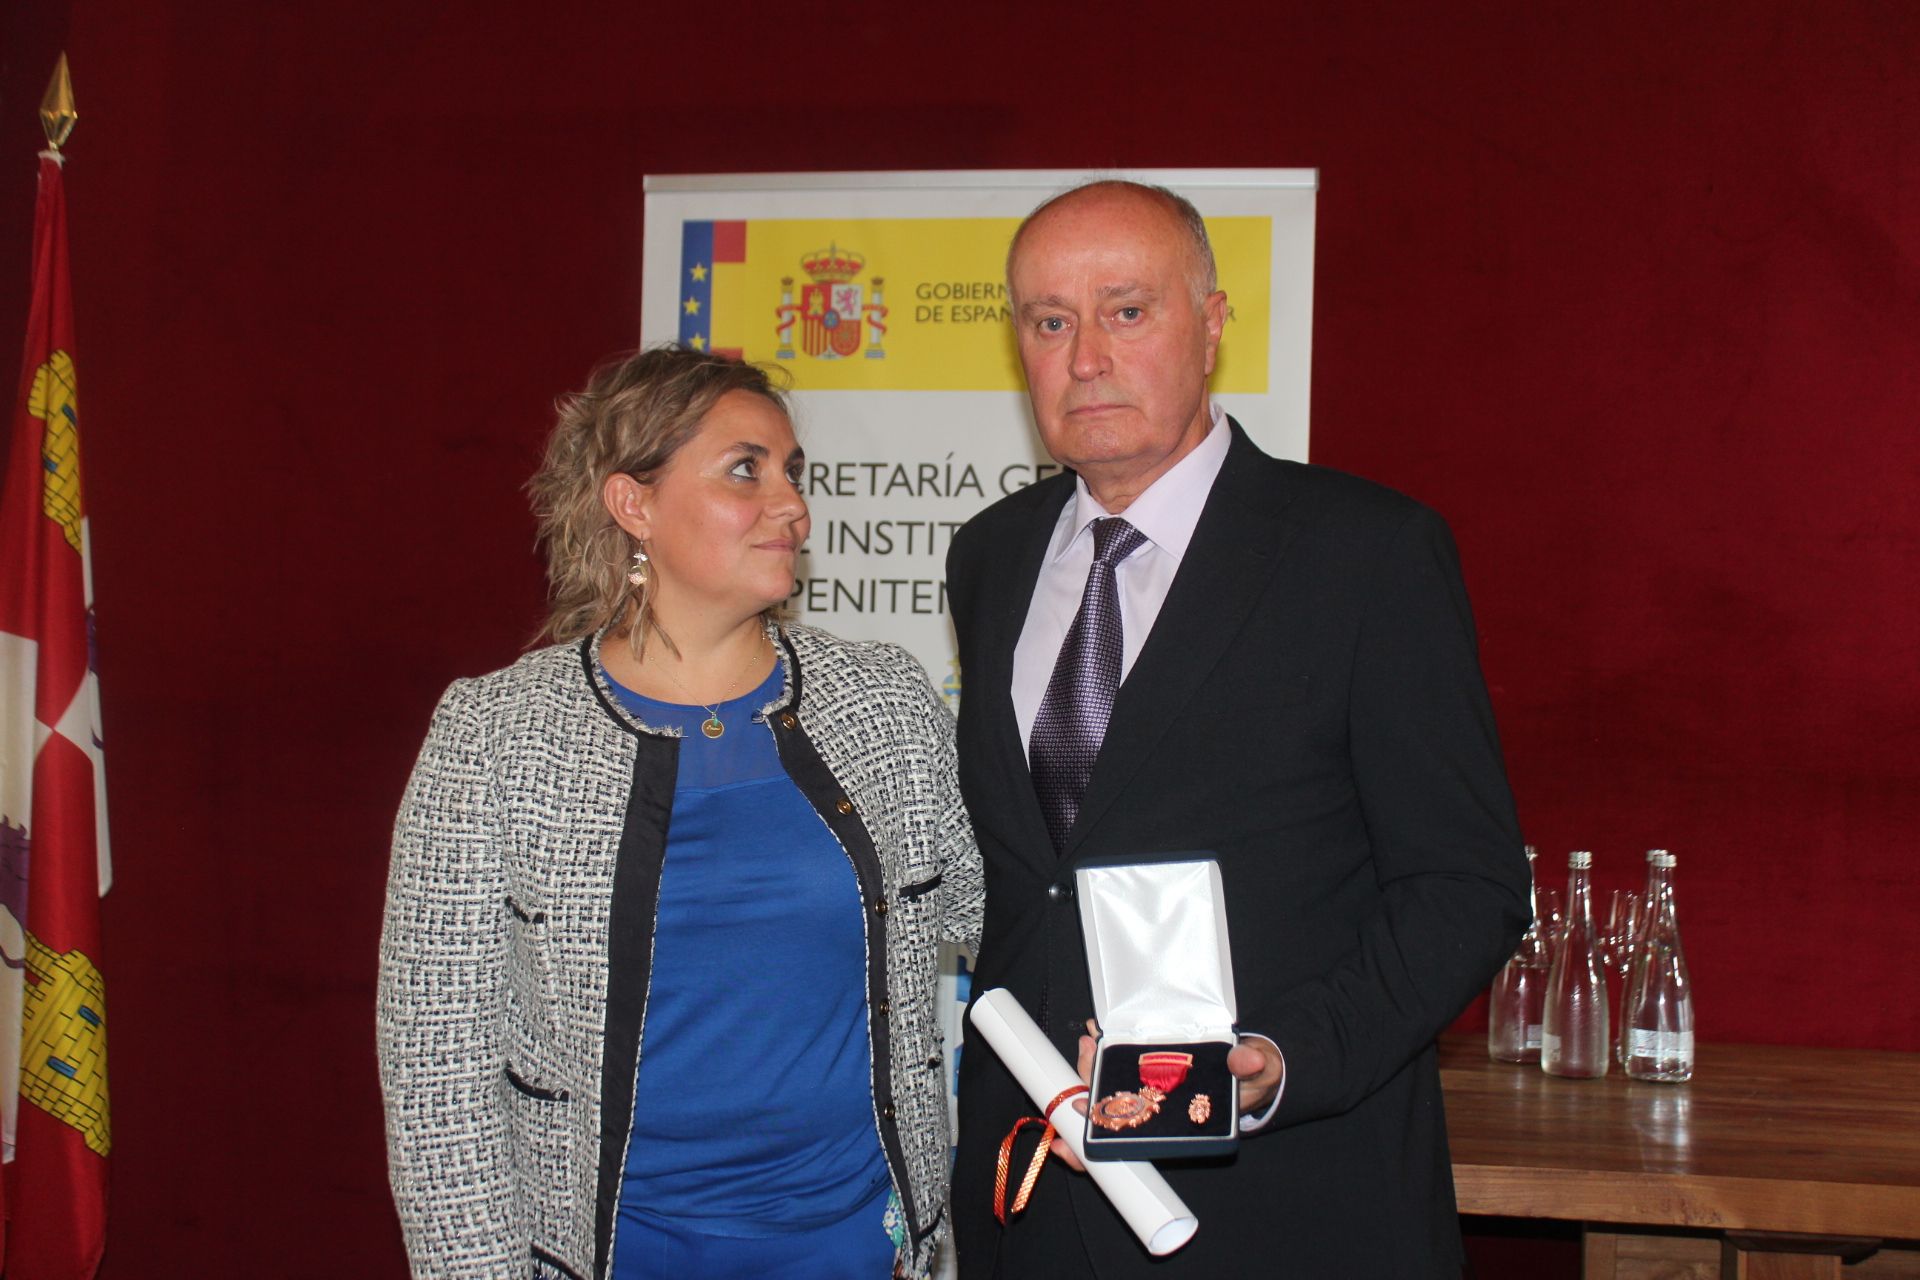 Henar García con uno de los funcionarios de Villahierro galardonado con la Medalla de Bronce de Instituciones Penitenciarias